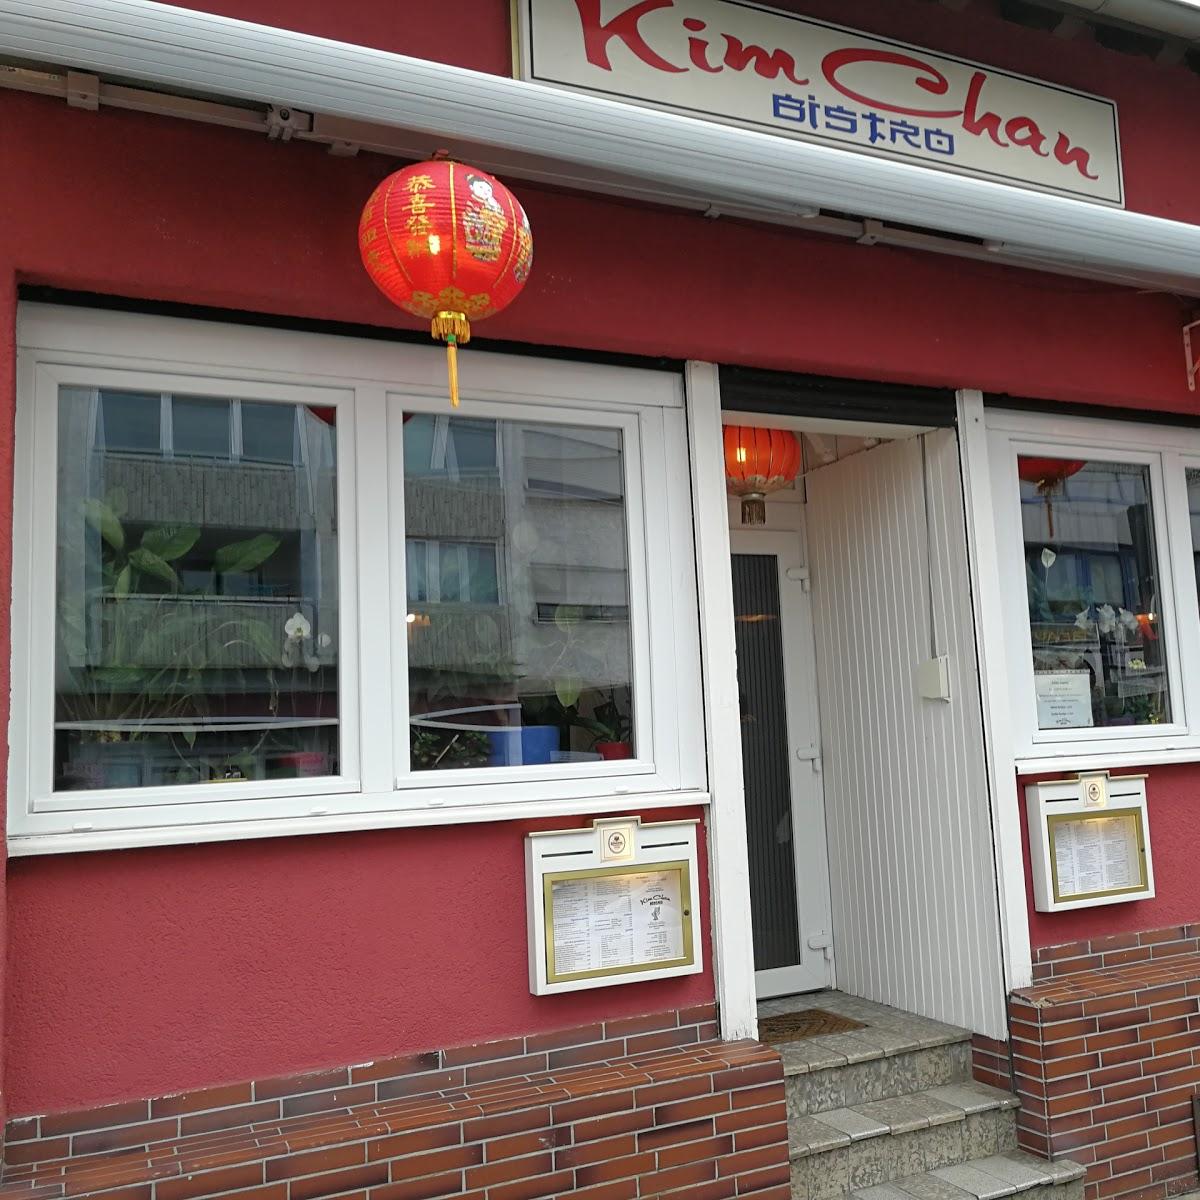 Restaurant "Kim Chan Bistro" in Dreieich